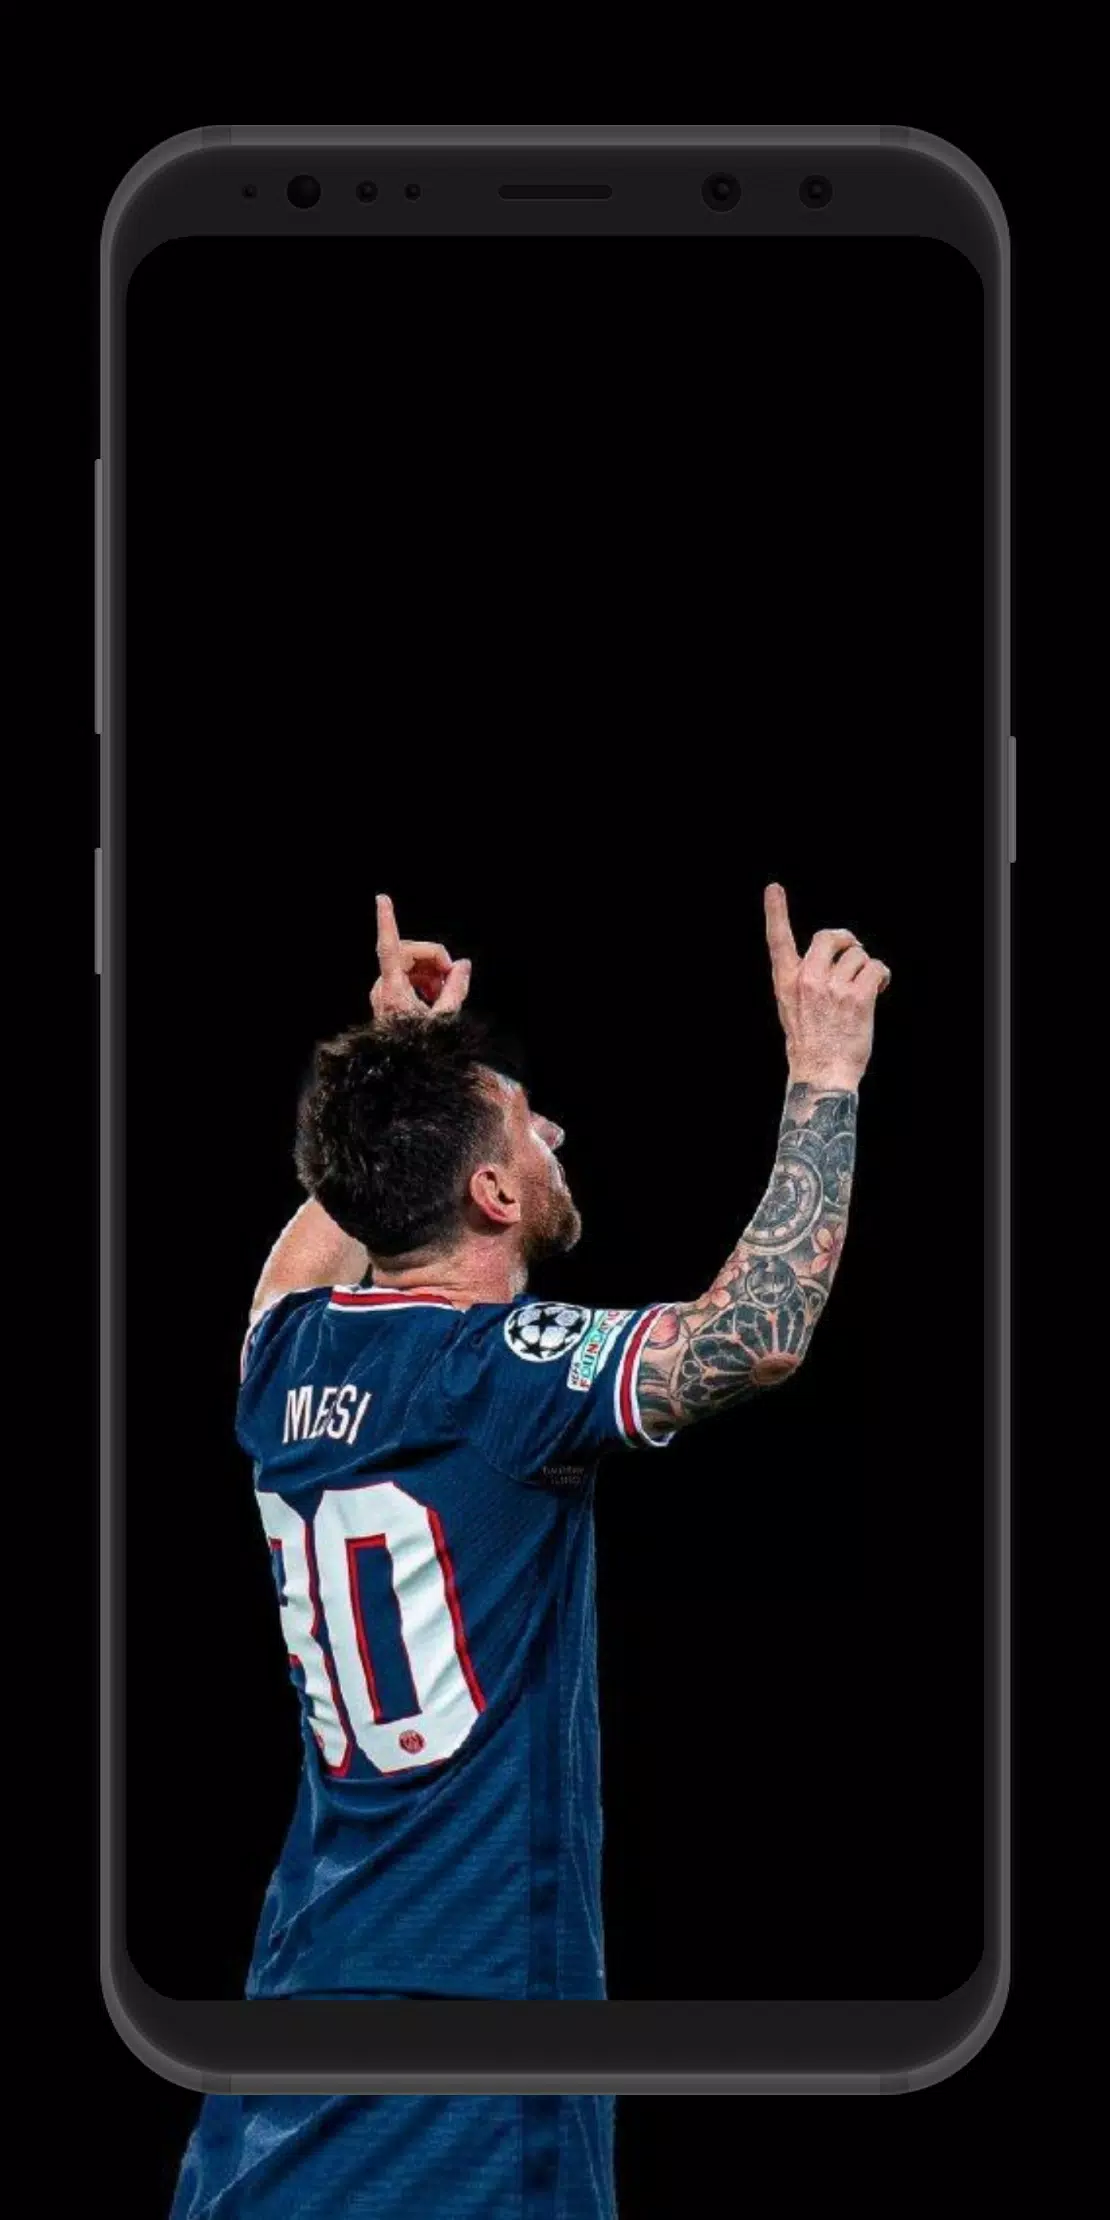 Messi PSG wallpaper APK: Tải ngay ứng dụng Messi PSG wallpaper APK để sở hữu ngay những bức ảnh nền chất lượng cao của Messi trong màu áo PSG. Không cần mất nhiều thời gian tìm kiếm trên mạng, ứng dụng sẽ cung cấp cho bạn hàng ngàn tùy chọn ảnh nền đẹp mắt để bạn tự do lựa chọn.